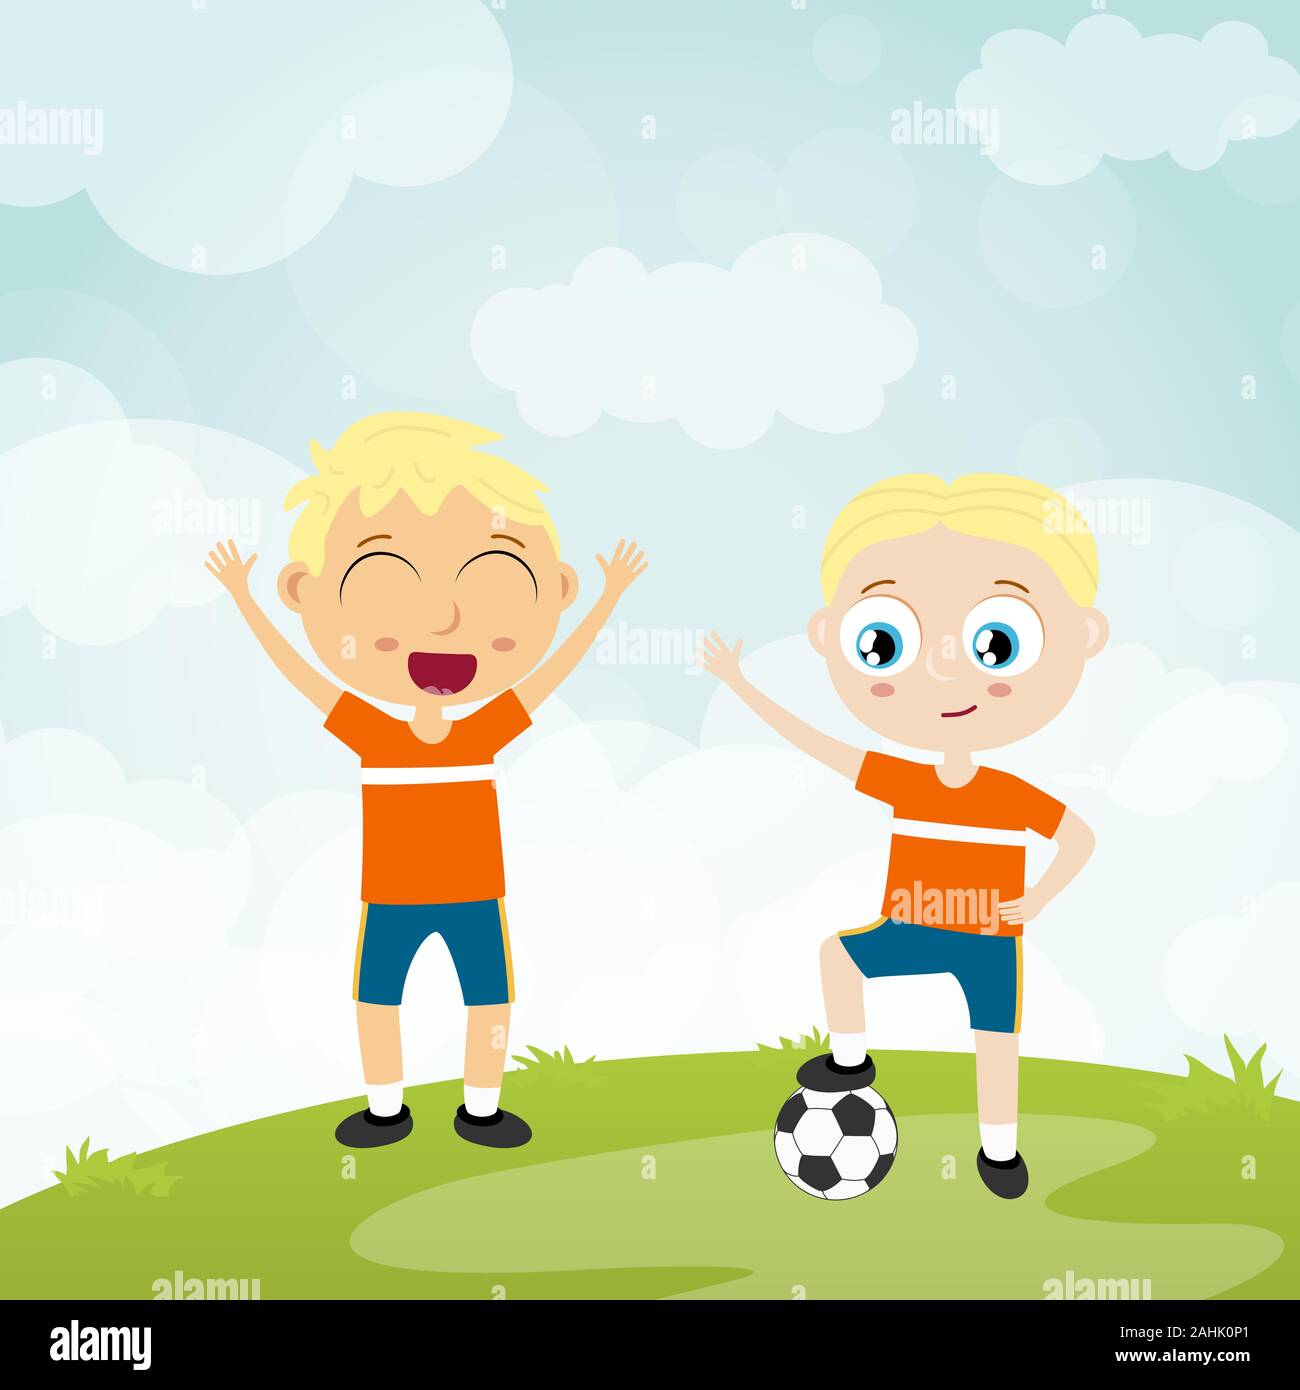 EPS 10 Vektordatei anzeigen glückliche junge Kinder Fußball Mannschaft Spieler mit weißer Hautfarbe, Jungen lachen, hopping, Kugel zusammen spielen vor Summe Stock Vektor